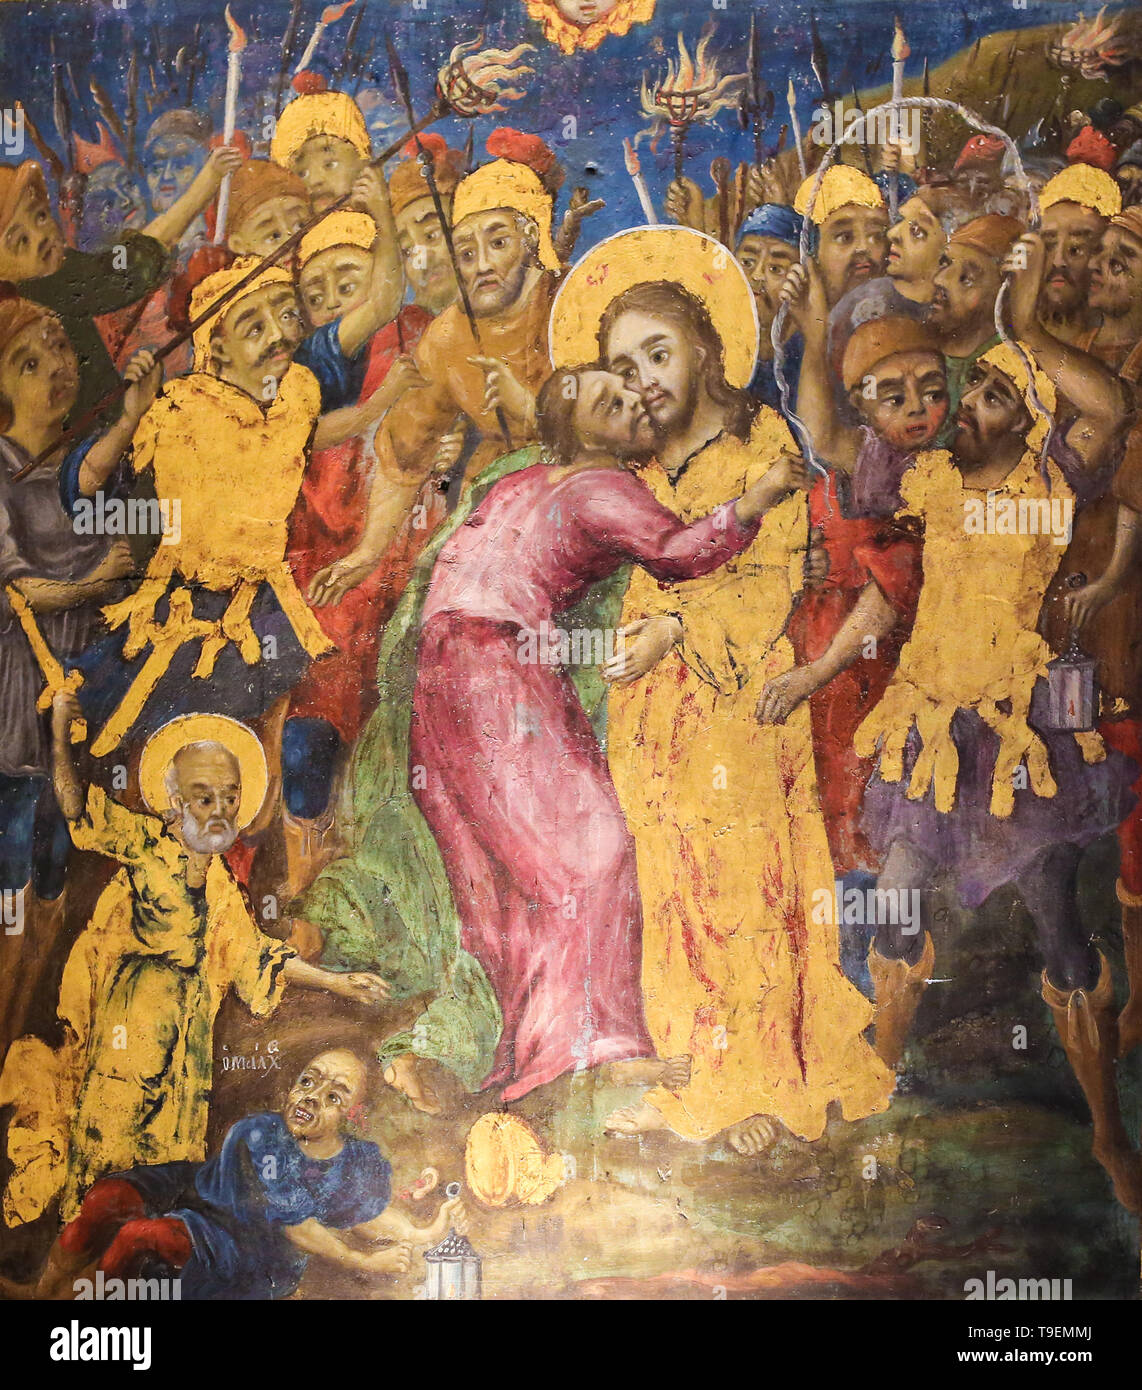 Fresque grecque orthodoxe dans l'église du Saint Sépulcre à Jérusalem, représentant Judas Iscariot trahissant Jésus avec un baiser Banque D'Images